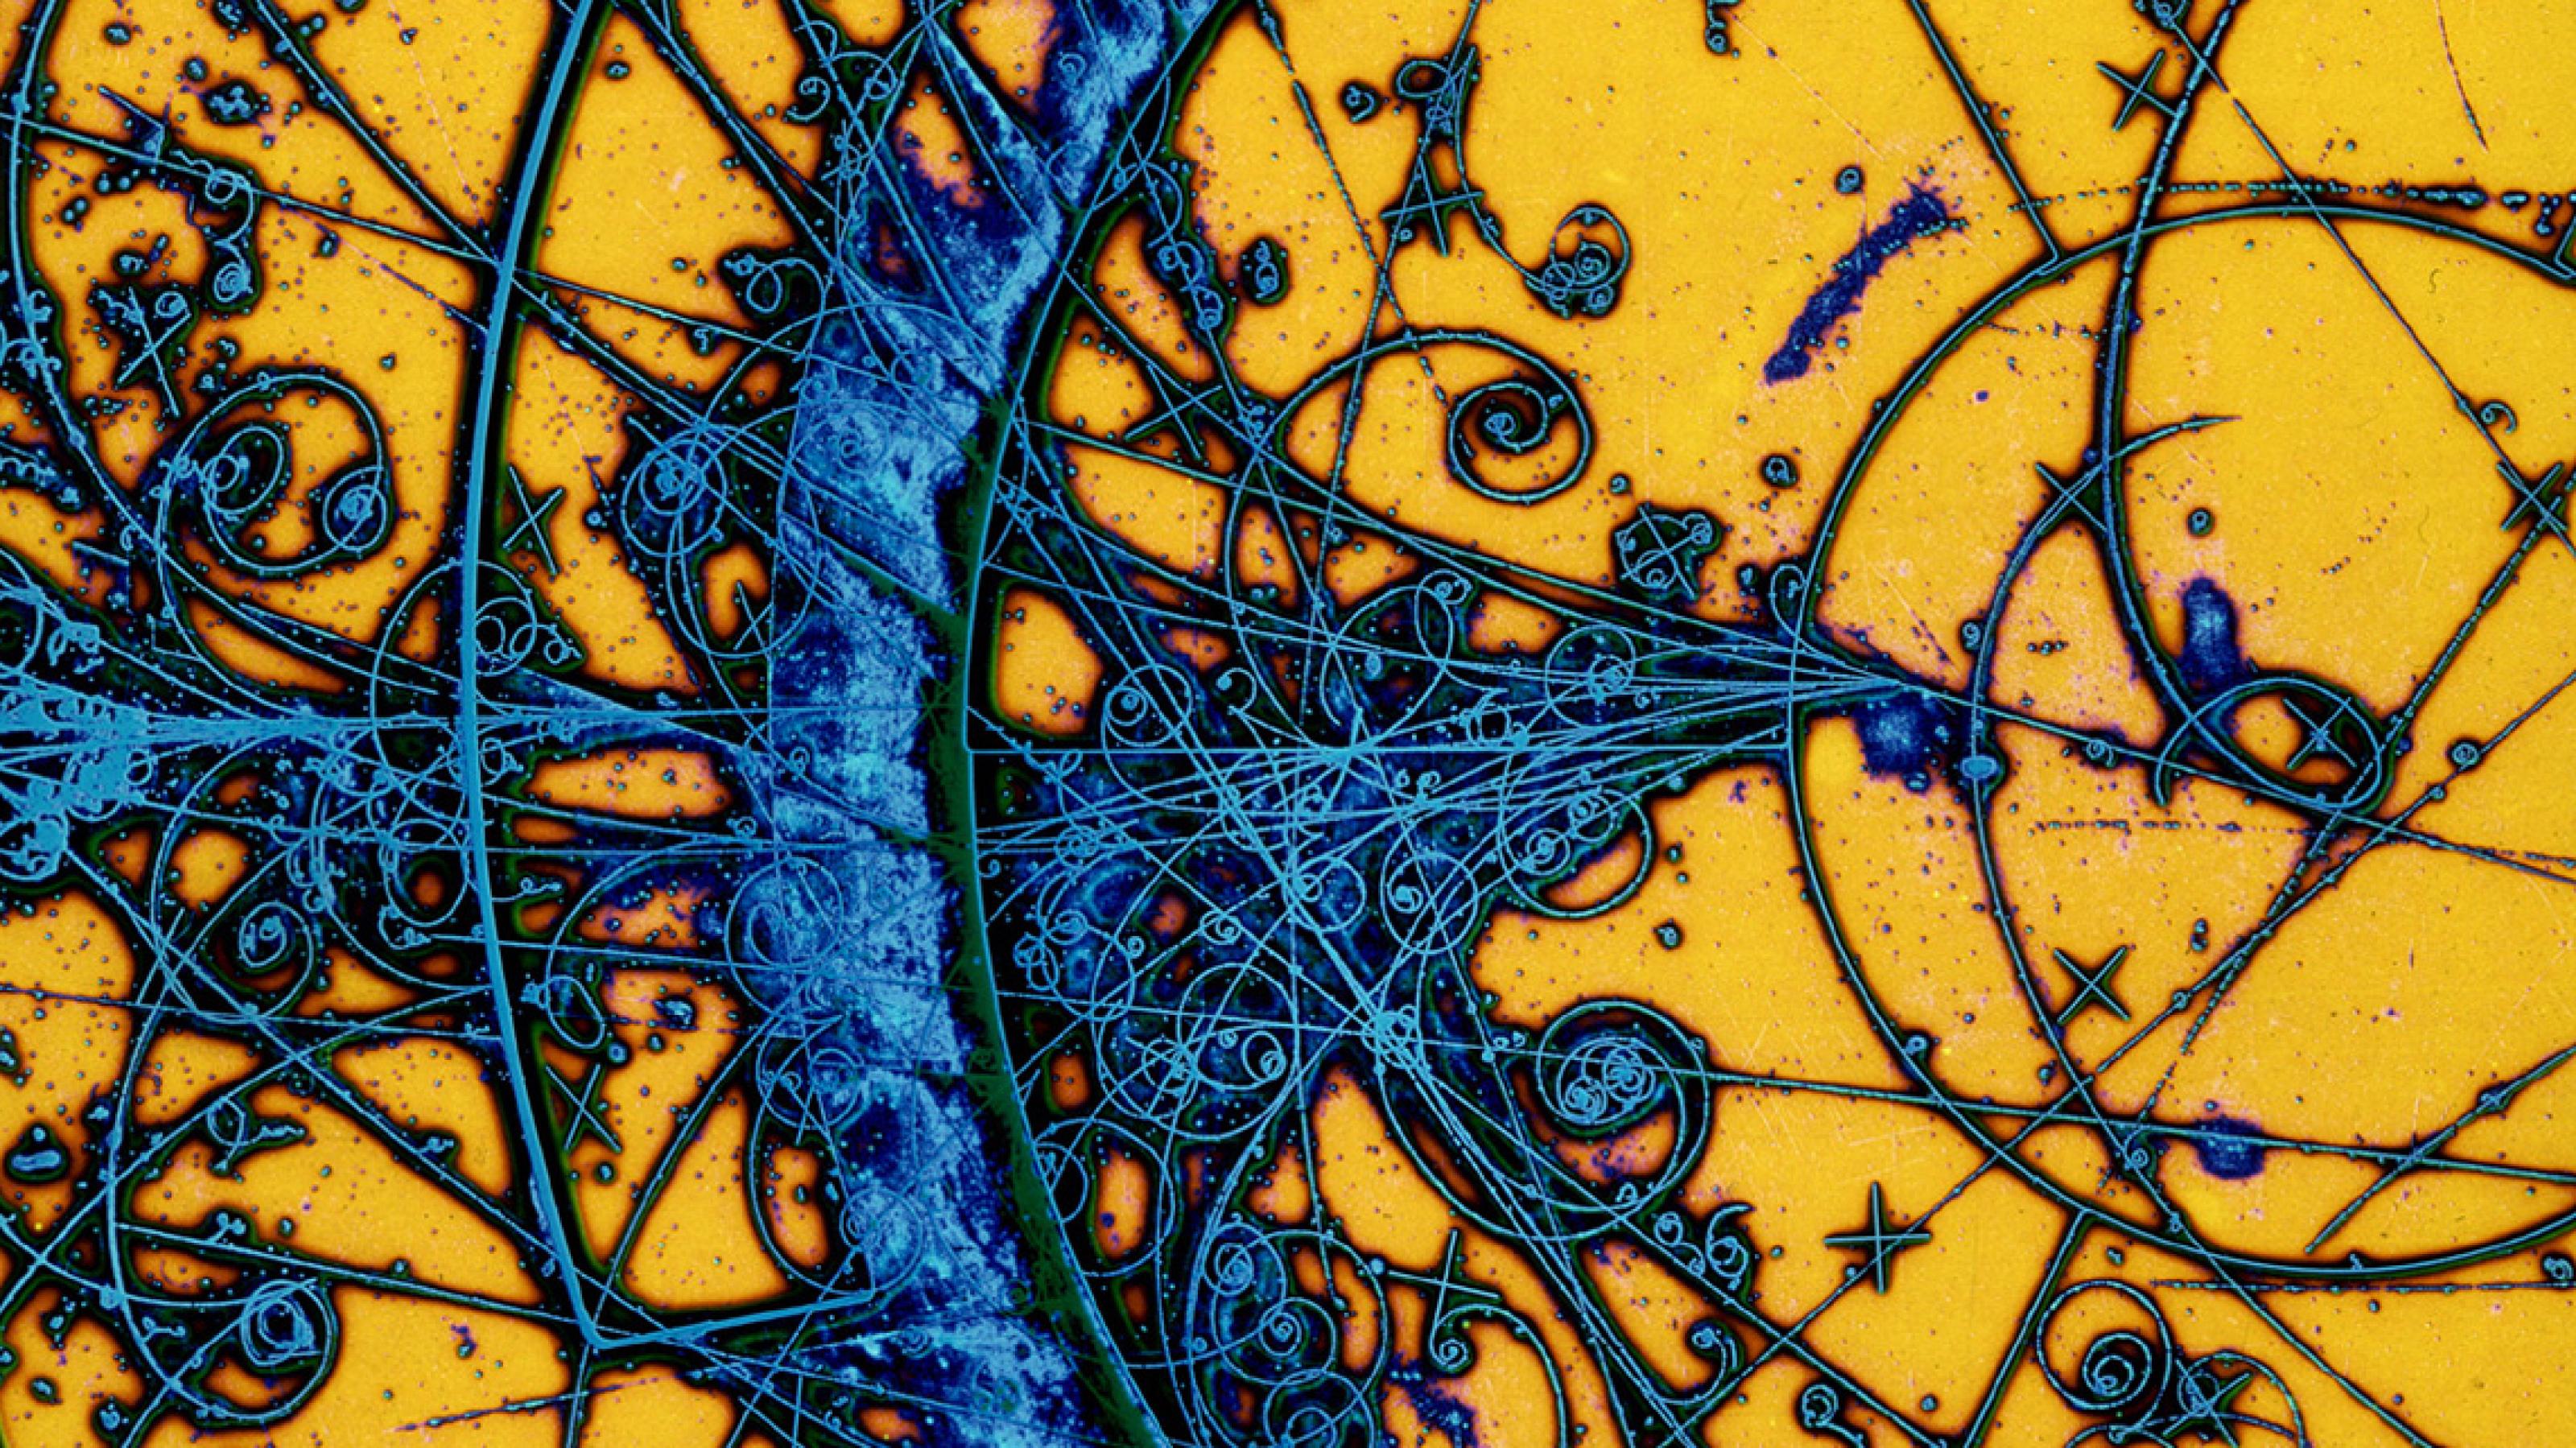 Eine kolorierte Aufnahme einer Bubble Chamber zeigt einen gelben Hintergrund mit blau eingefärbten Teilchenspuren, die teilweise gebogen und spiralförmig sind.